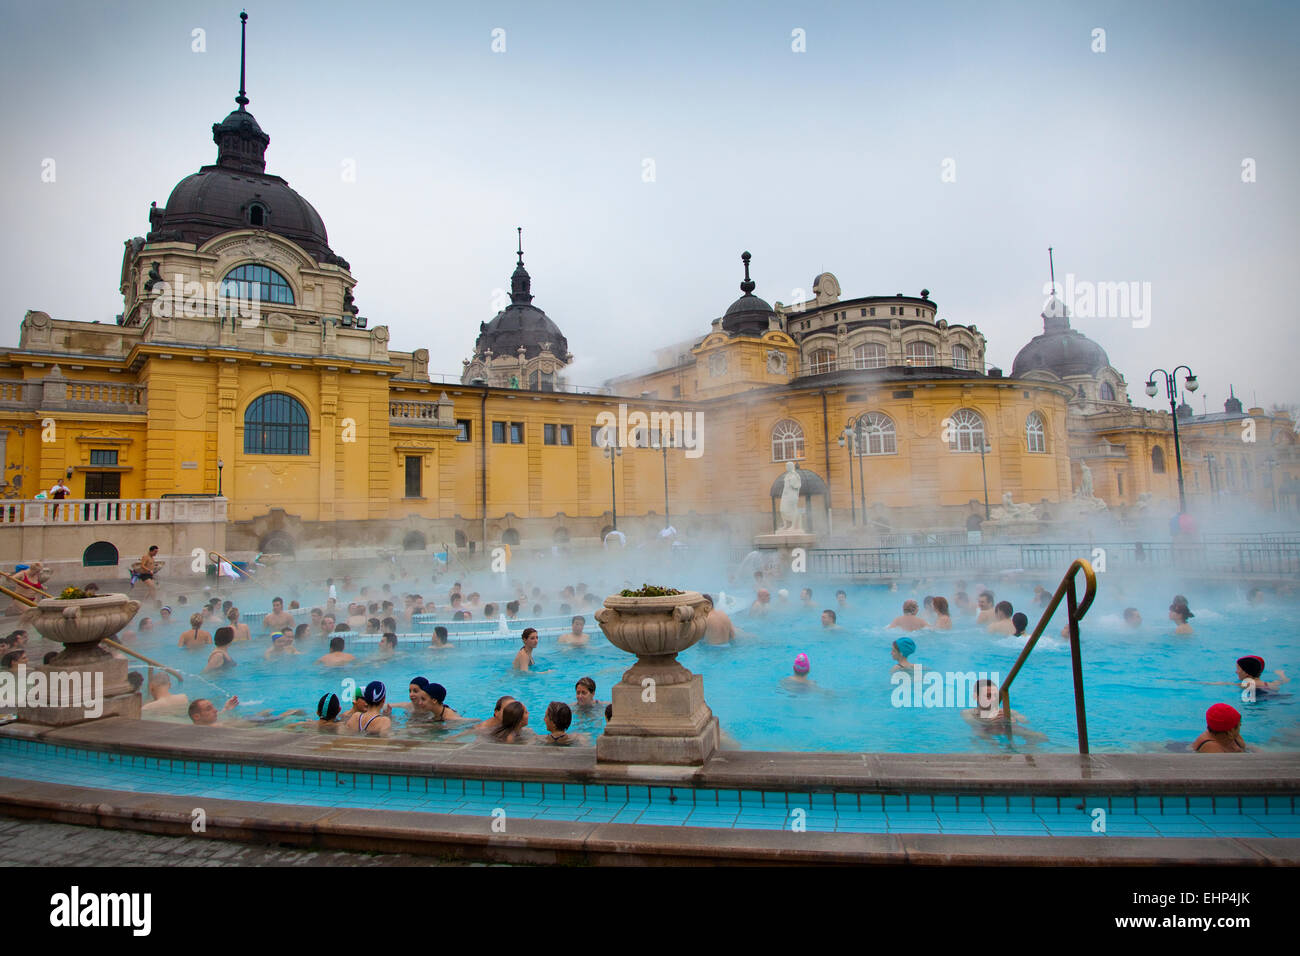 Les touristes et les habitants jouissent des thermes Széchenyi par une froide journée d'hiver, Budapest, Hongrie Banque D'Images